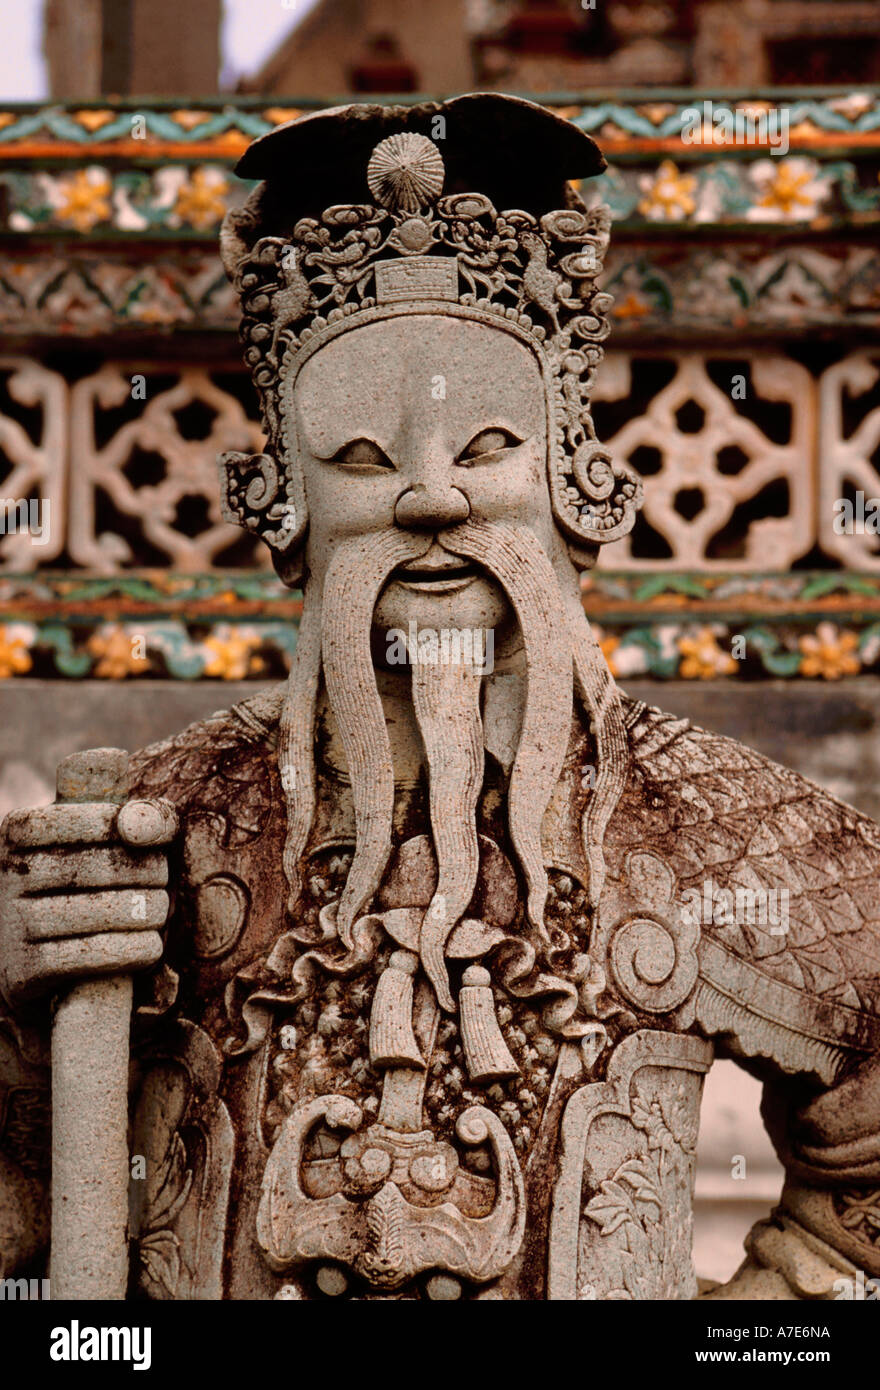 Chinese stone statue, Buddhism, Buddhist temple, Wat Arun, Bangkok, Thailand, Southeast Asia, Asia Stock Photo